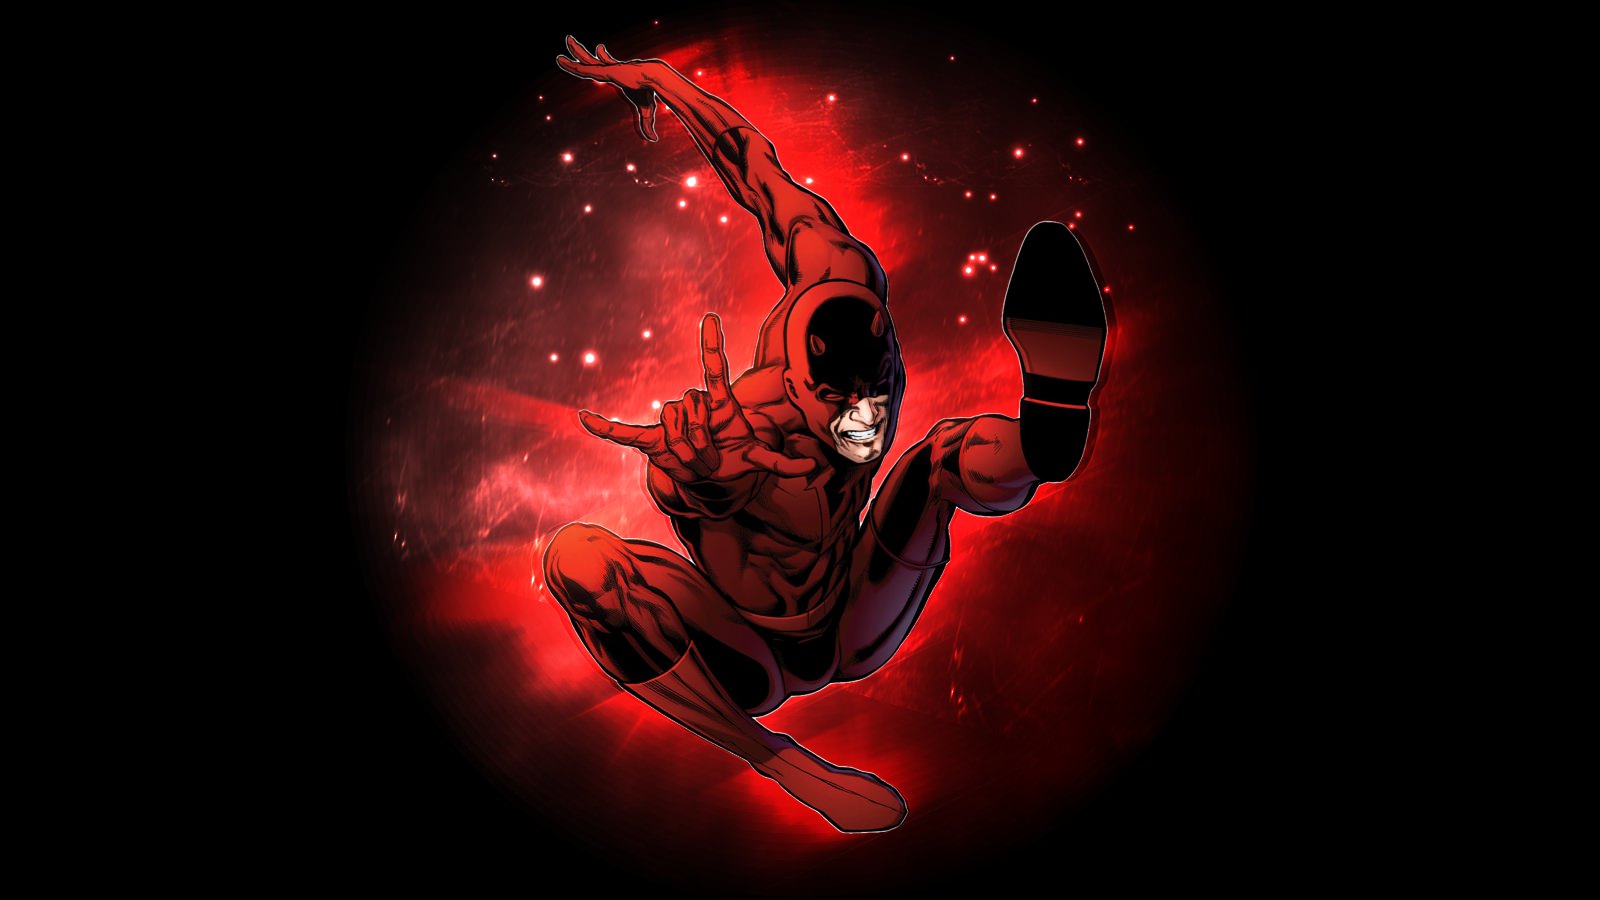 10 Hd Daredevil Wallpaper - Marvel Daredevil - 1600x900 Wallpaper -  